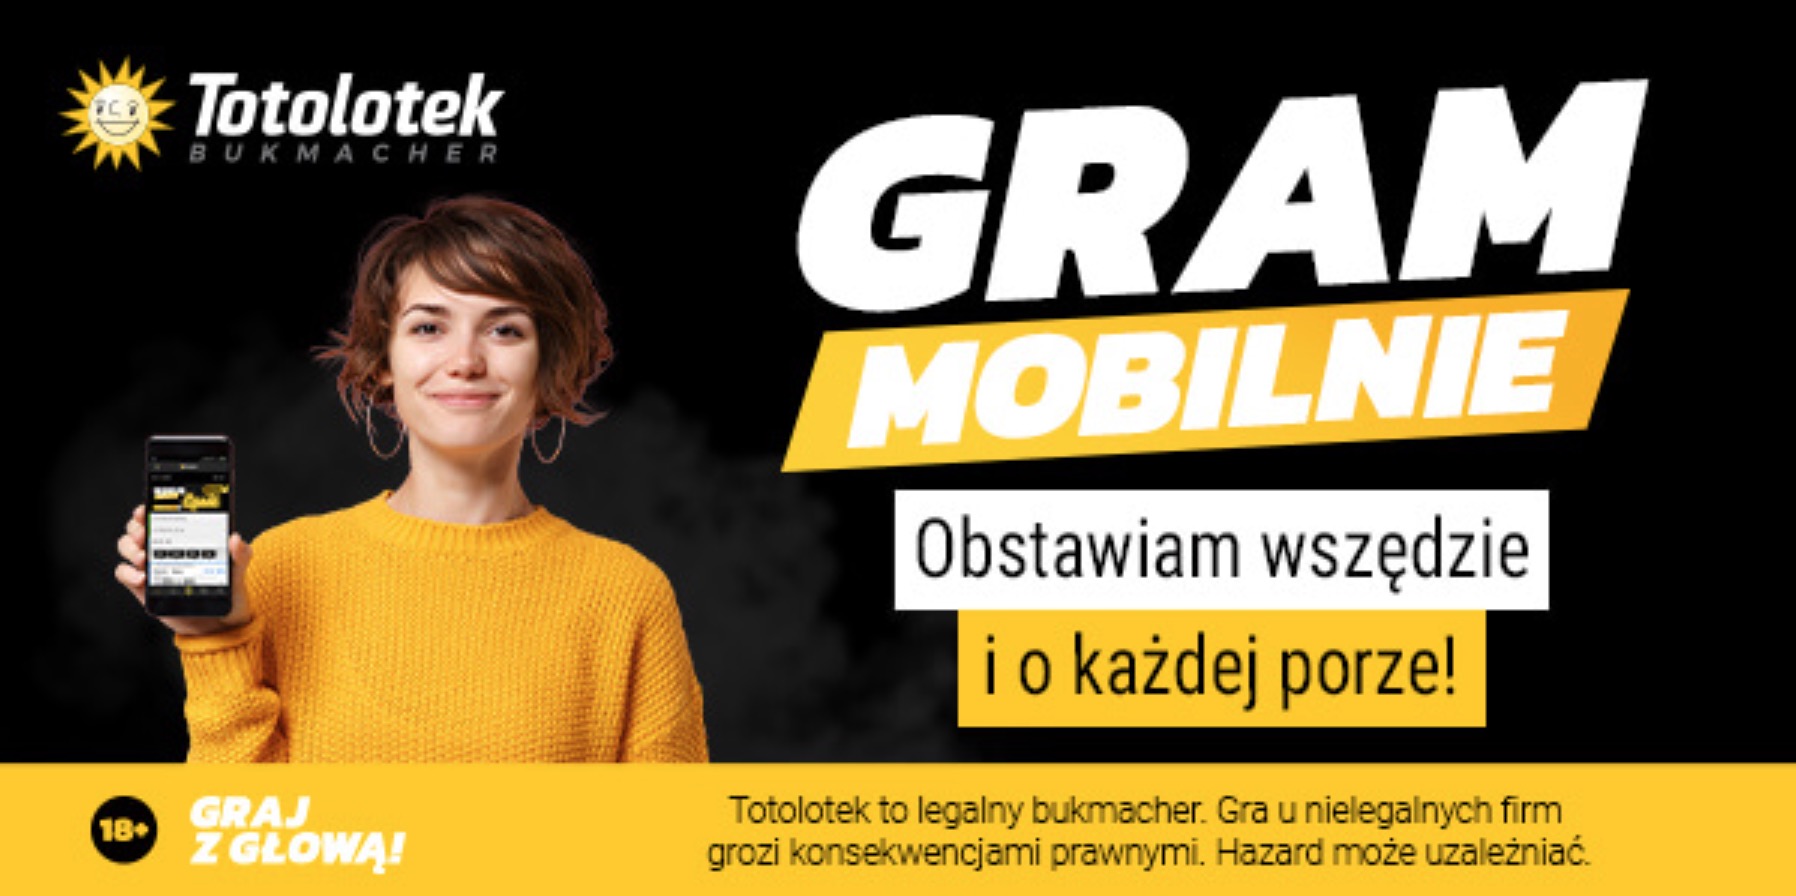 Totolotek mobilny app